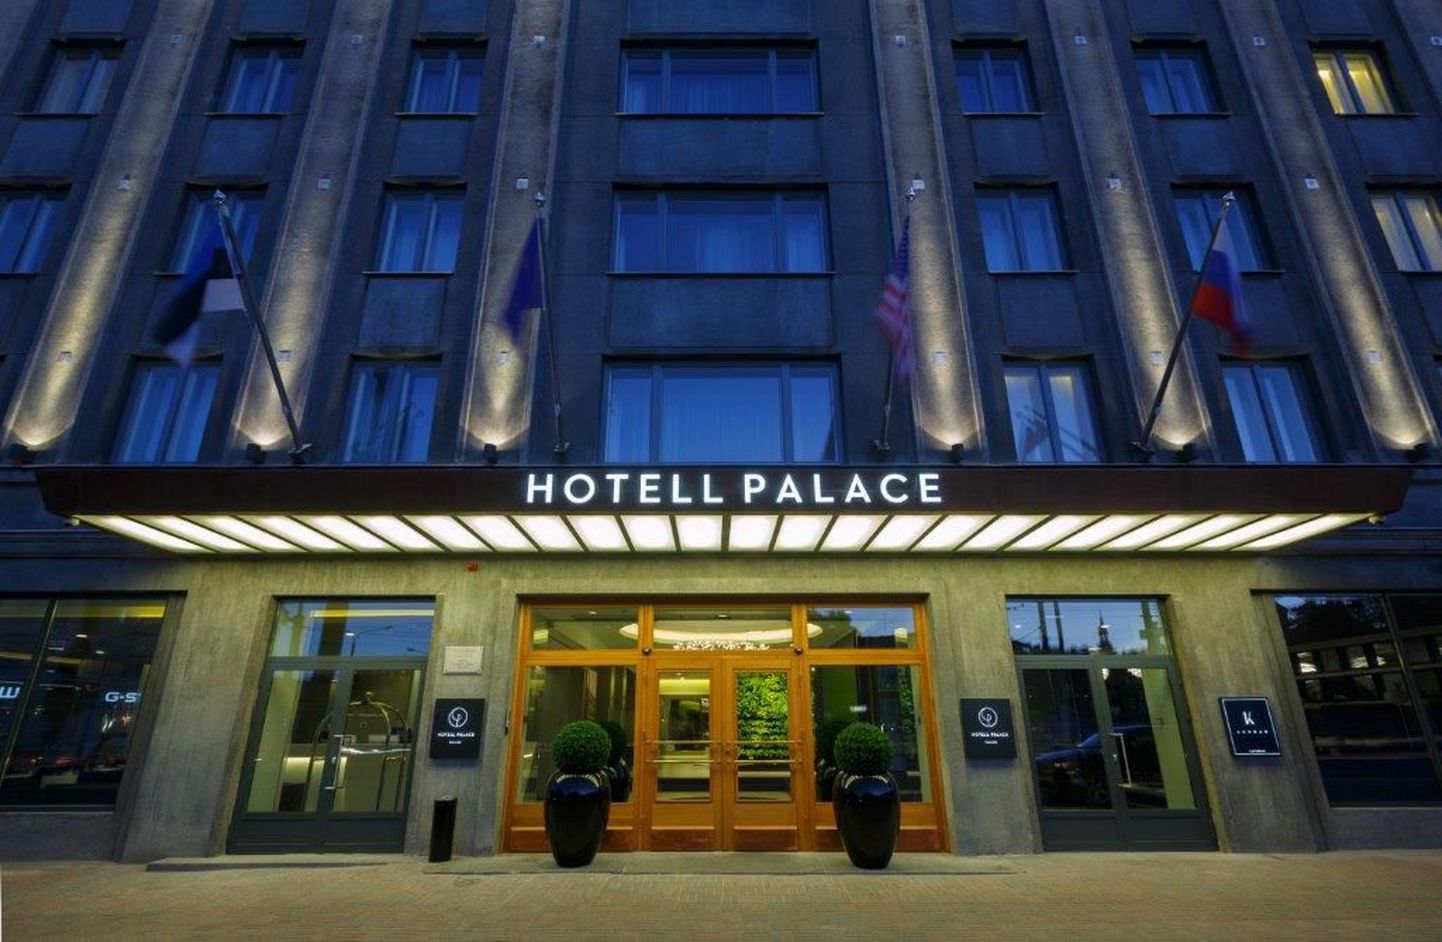 Hotell Palace.